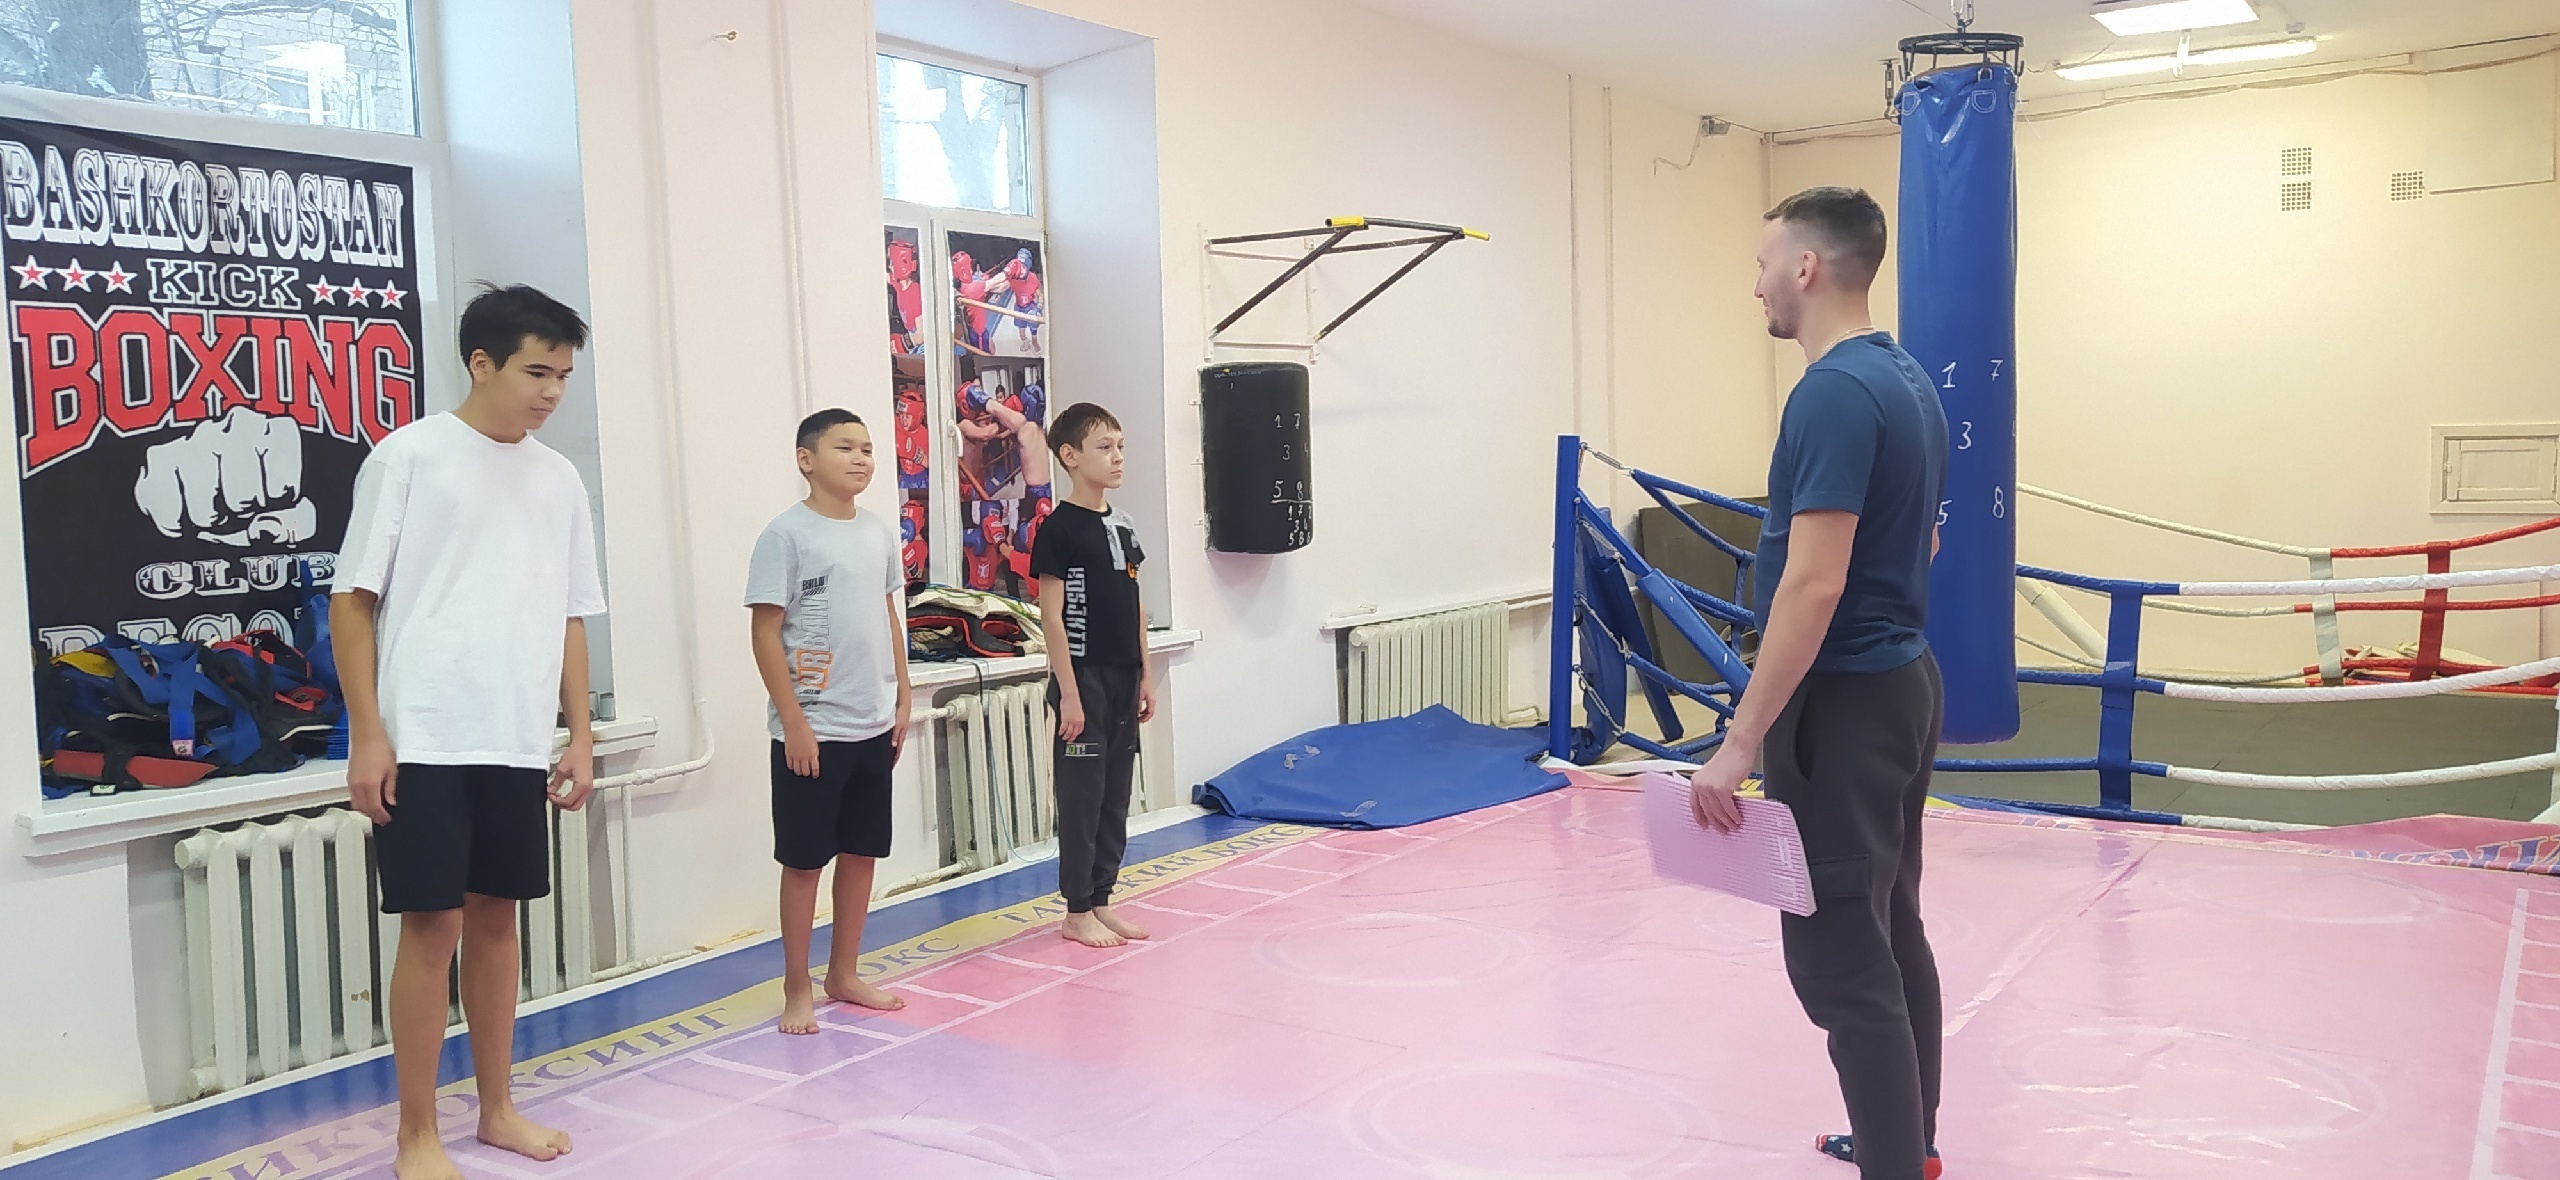 Педагог дополнительного образования Шумилов Никита Александрович для воспитанников секции тайский бокс провел викторину: " В здоровом теле - здоровый дух"